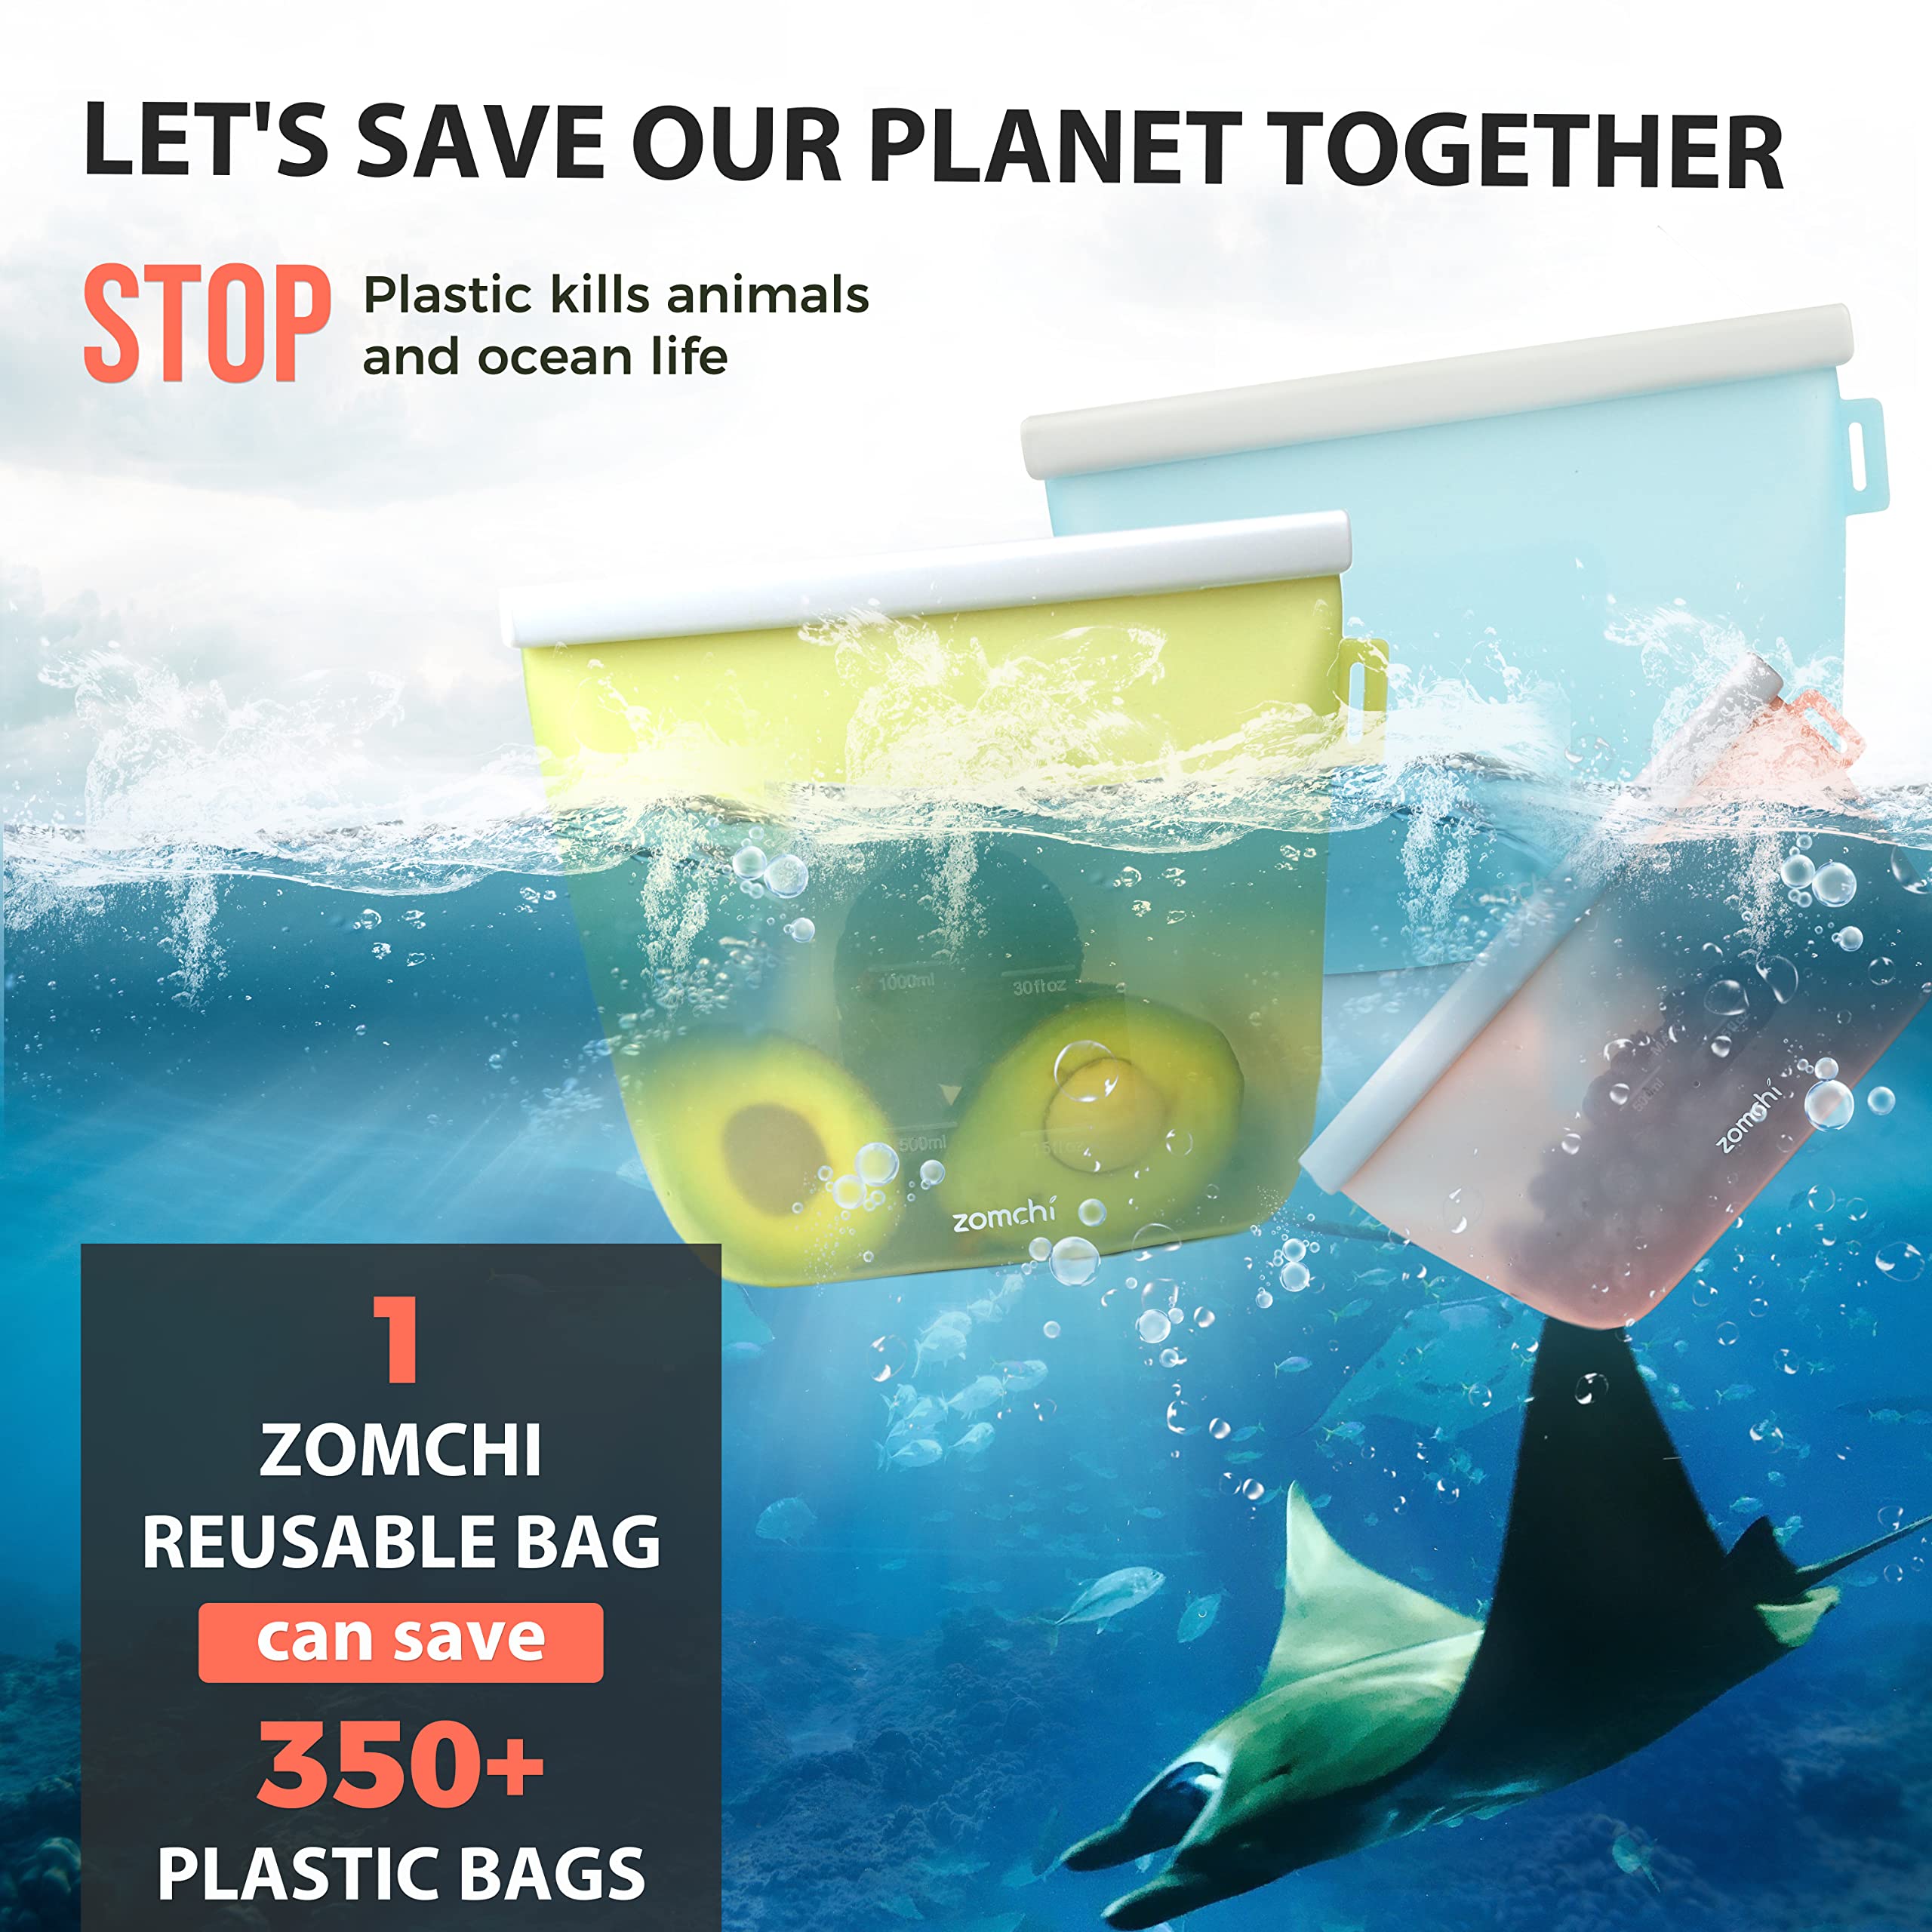 Zomchi Reusable Bag Can Save 350+ Plastic Bags